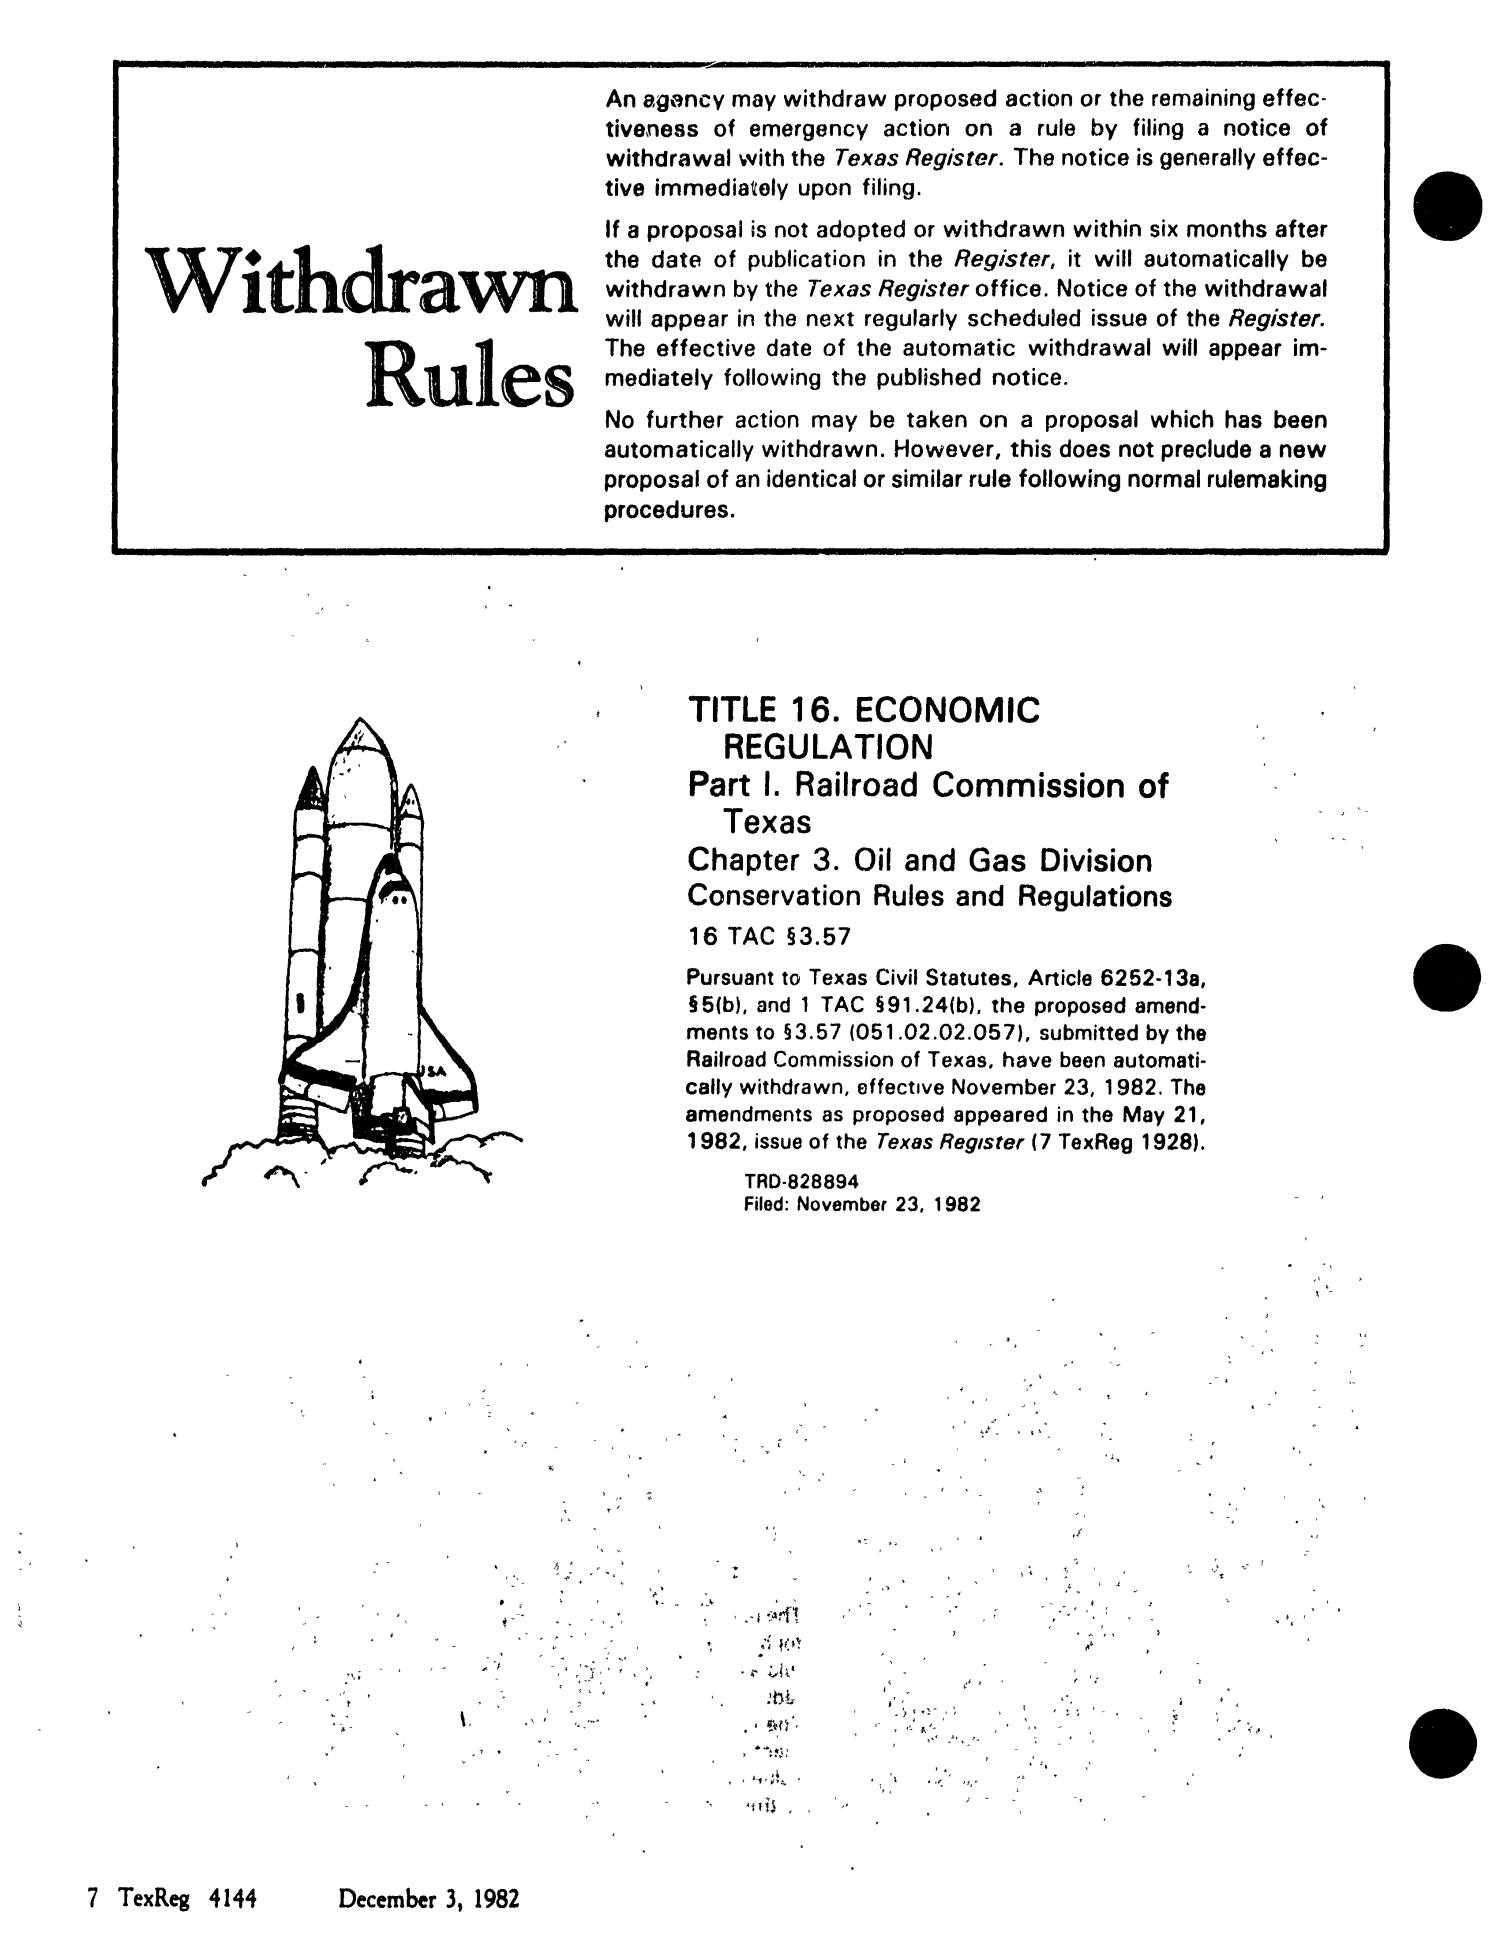 Texas Register, Volume 7, Number 89, Pages 4125-4234, December 3, 1982
                                                
                                                    4144
                                                